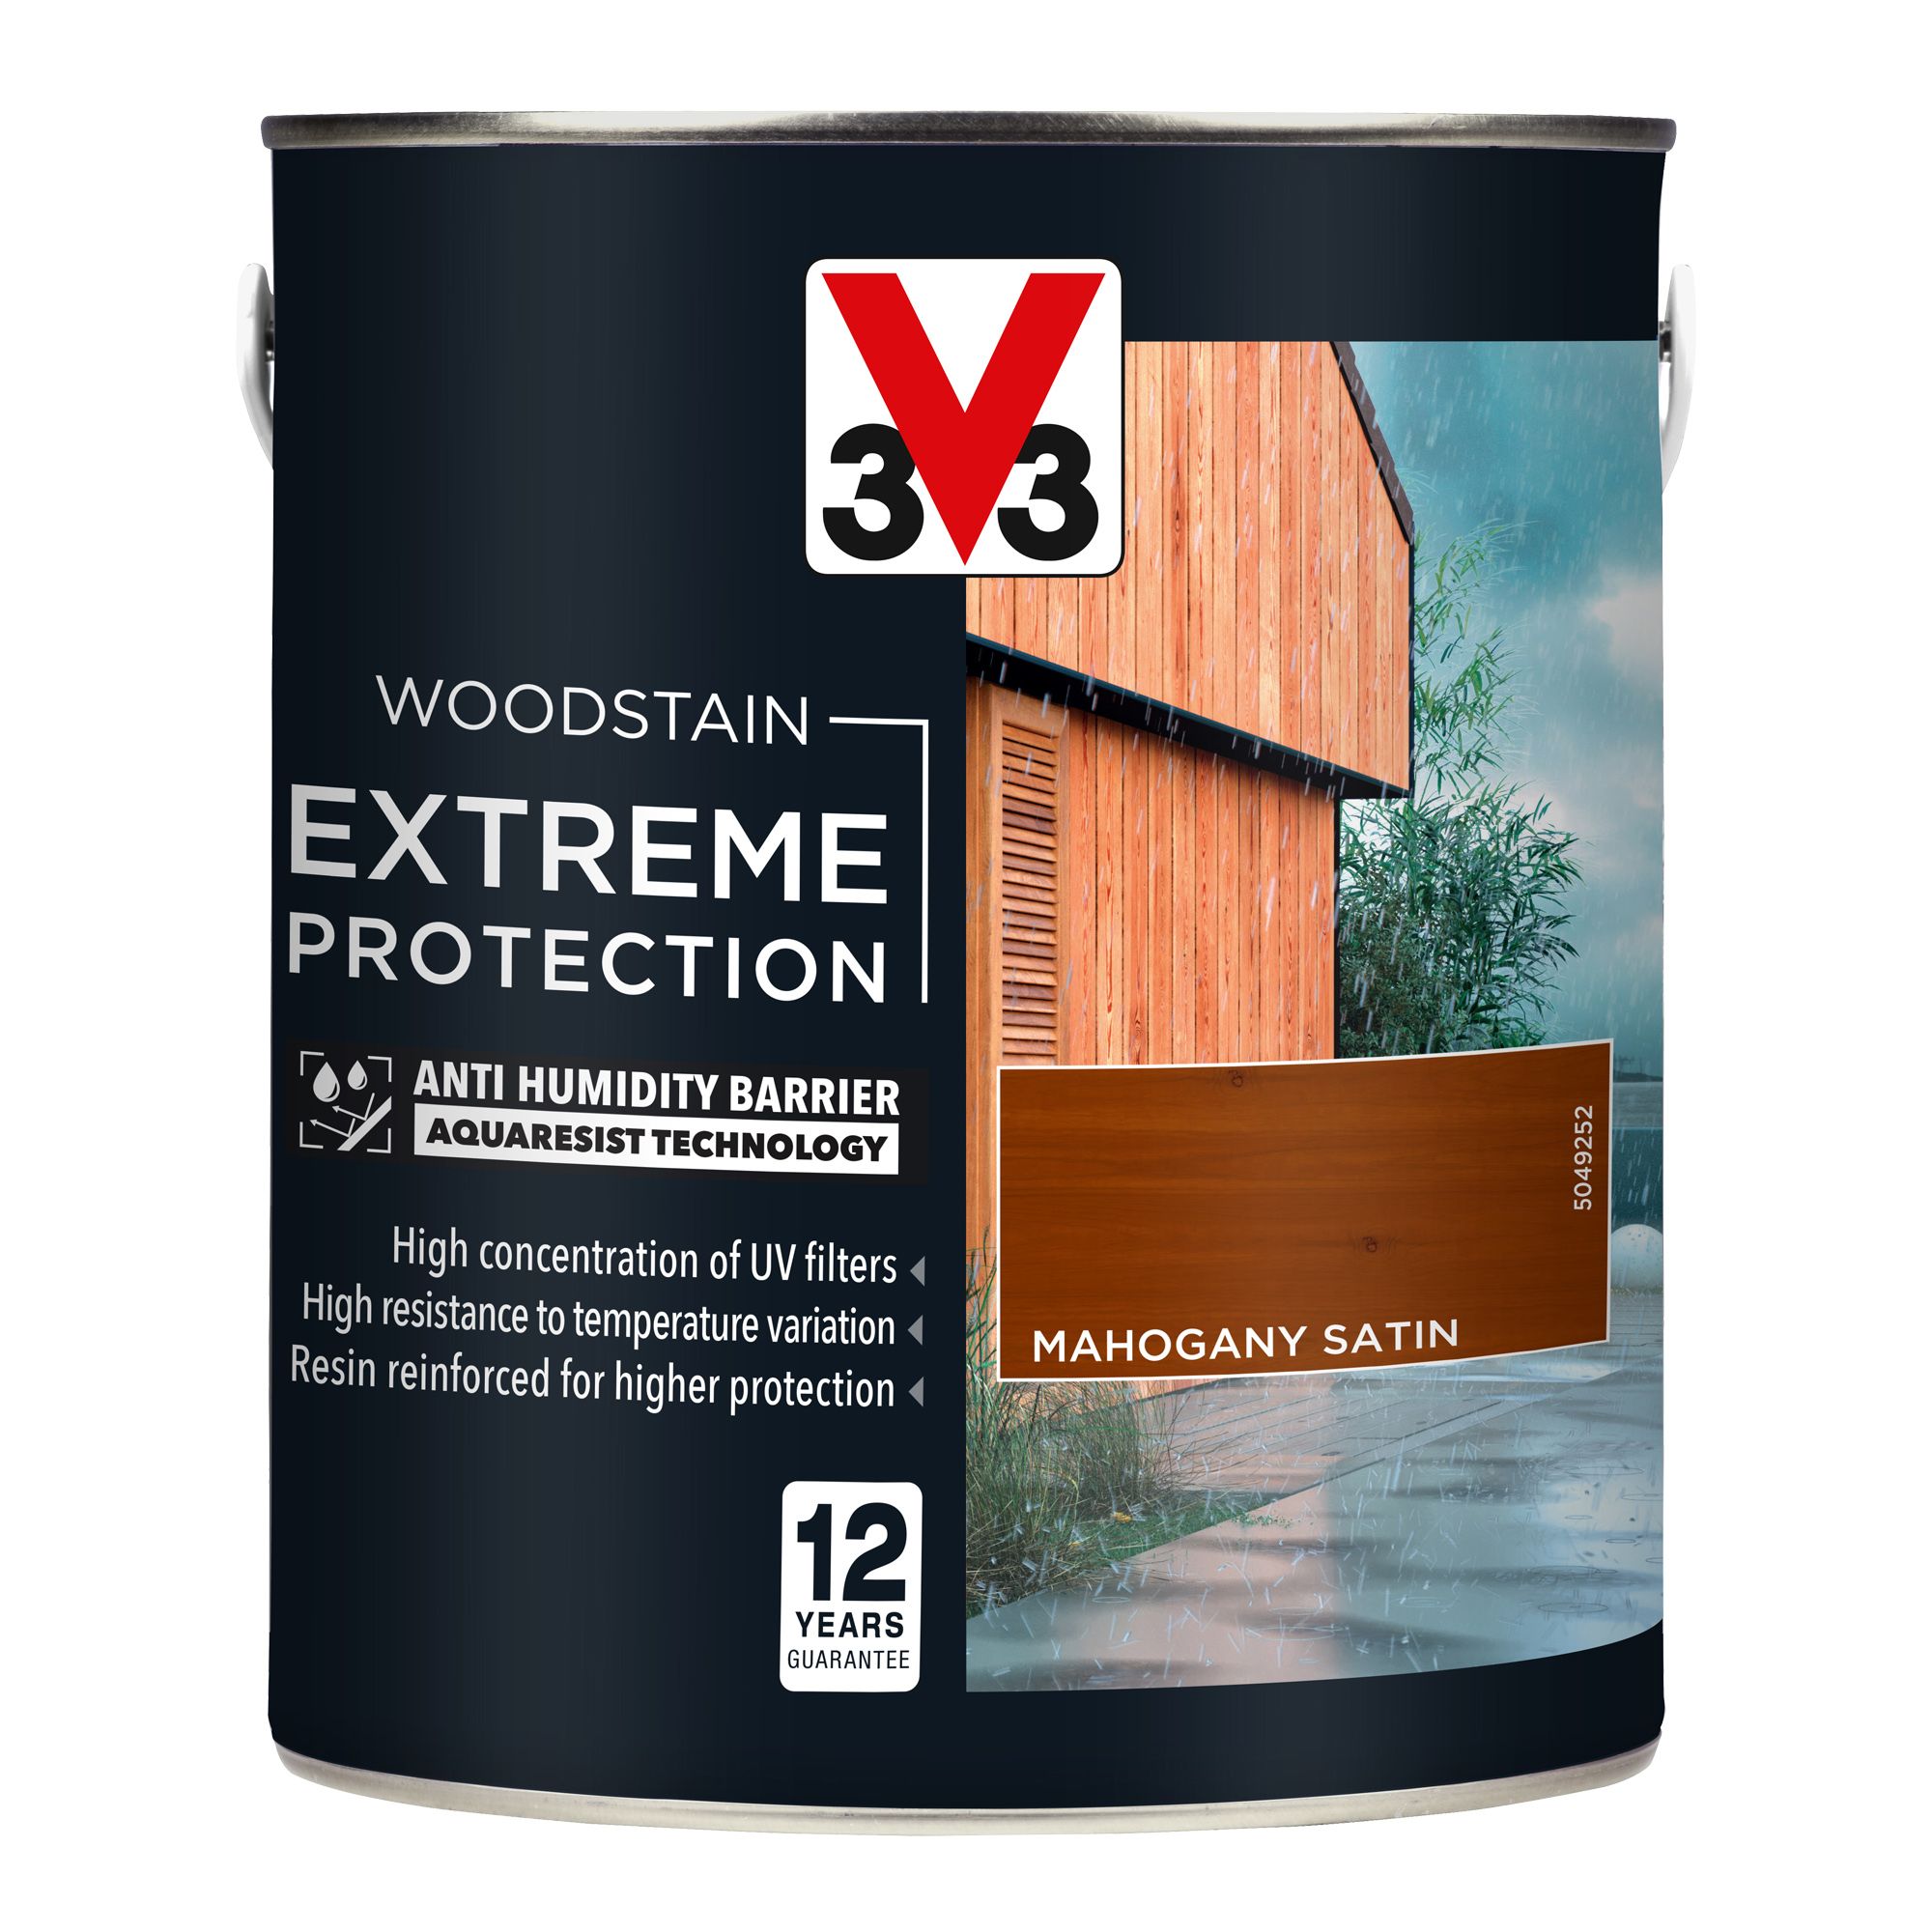 V33 Extreme protection Mahogany Satin Wood stain, 2.5L